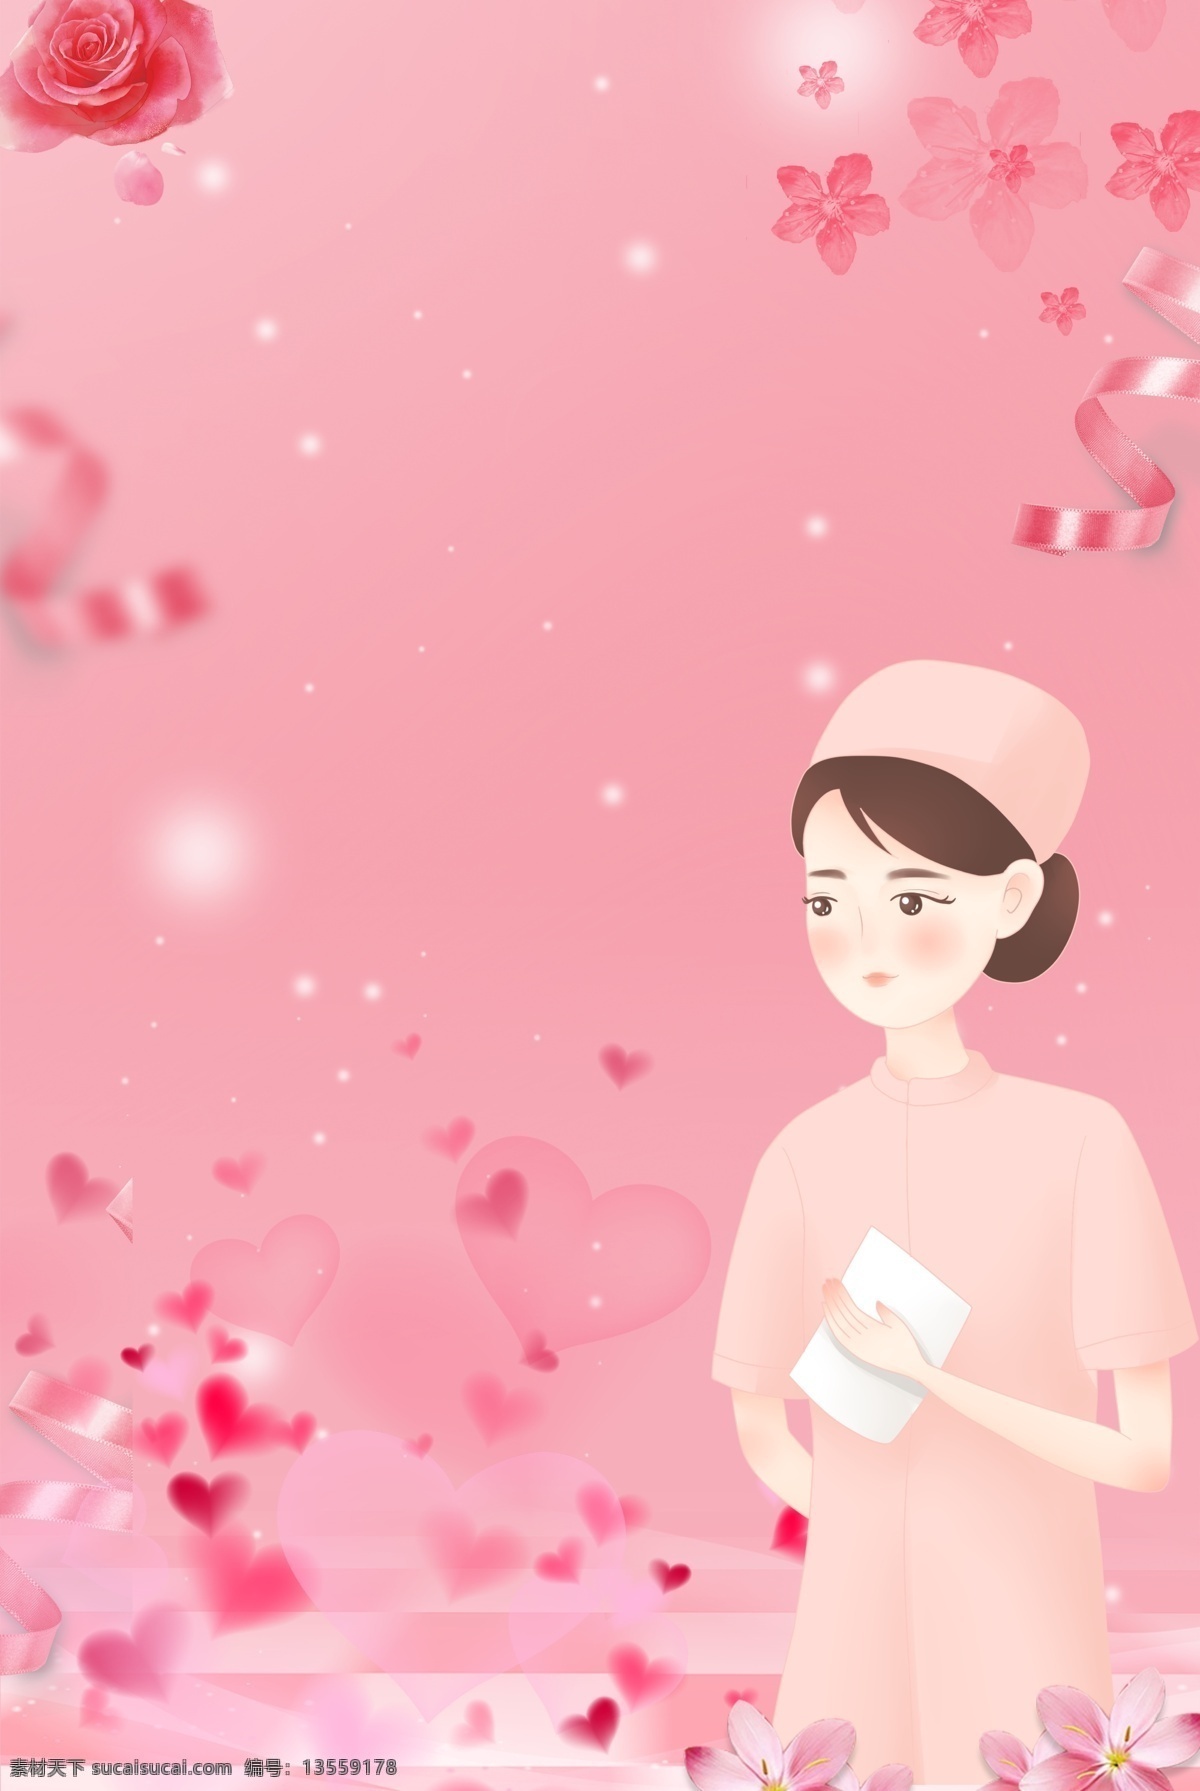 国际护士节 粉色 海报 背景 护士节 公益 爱心 白衣天使 天使在人间 粉色花朵 公益活动